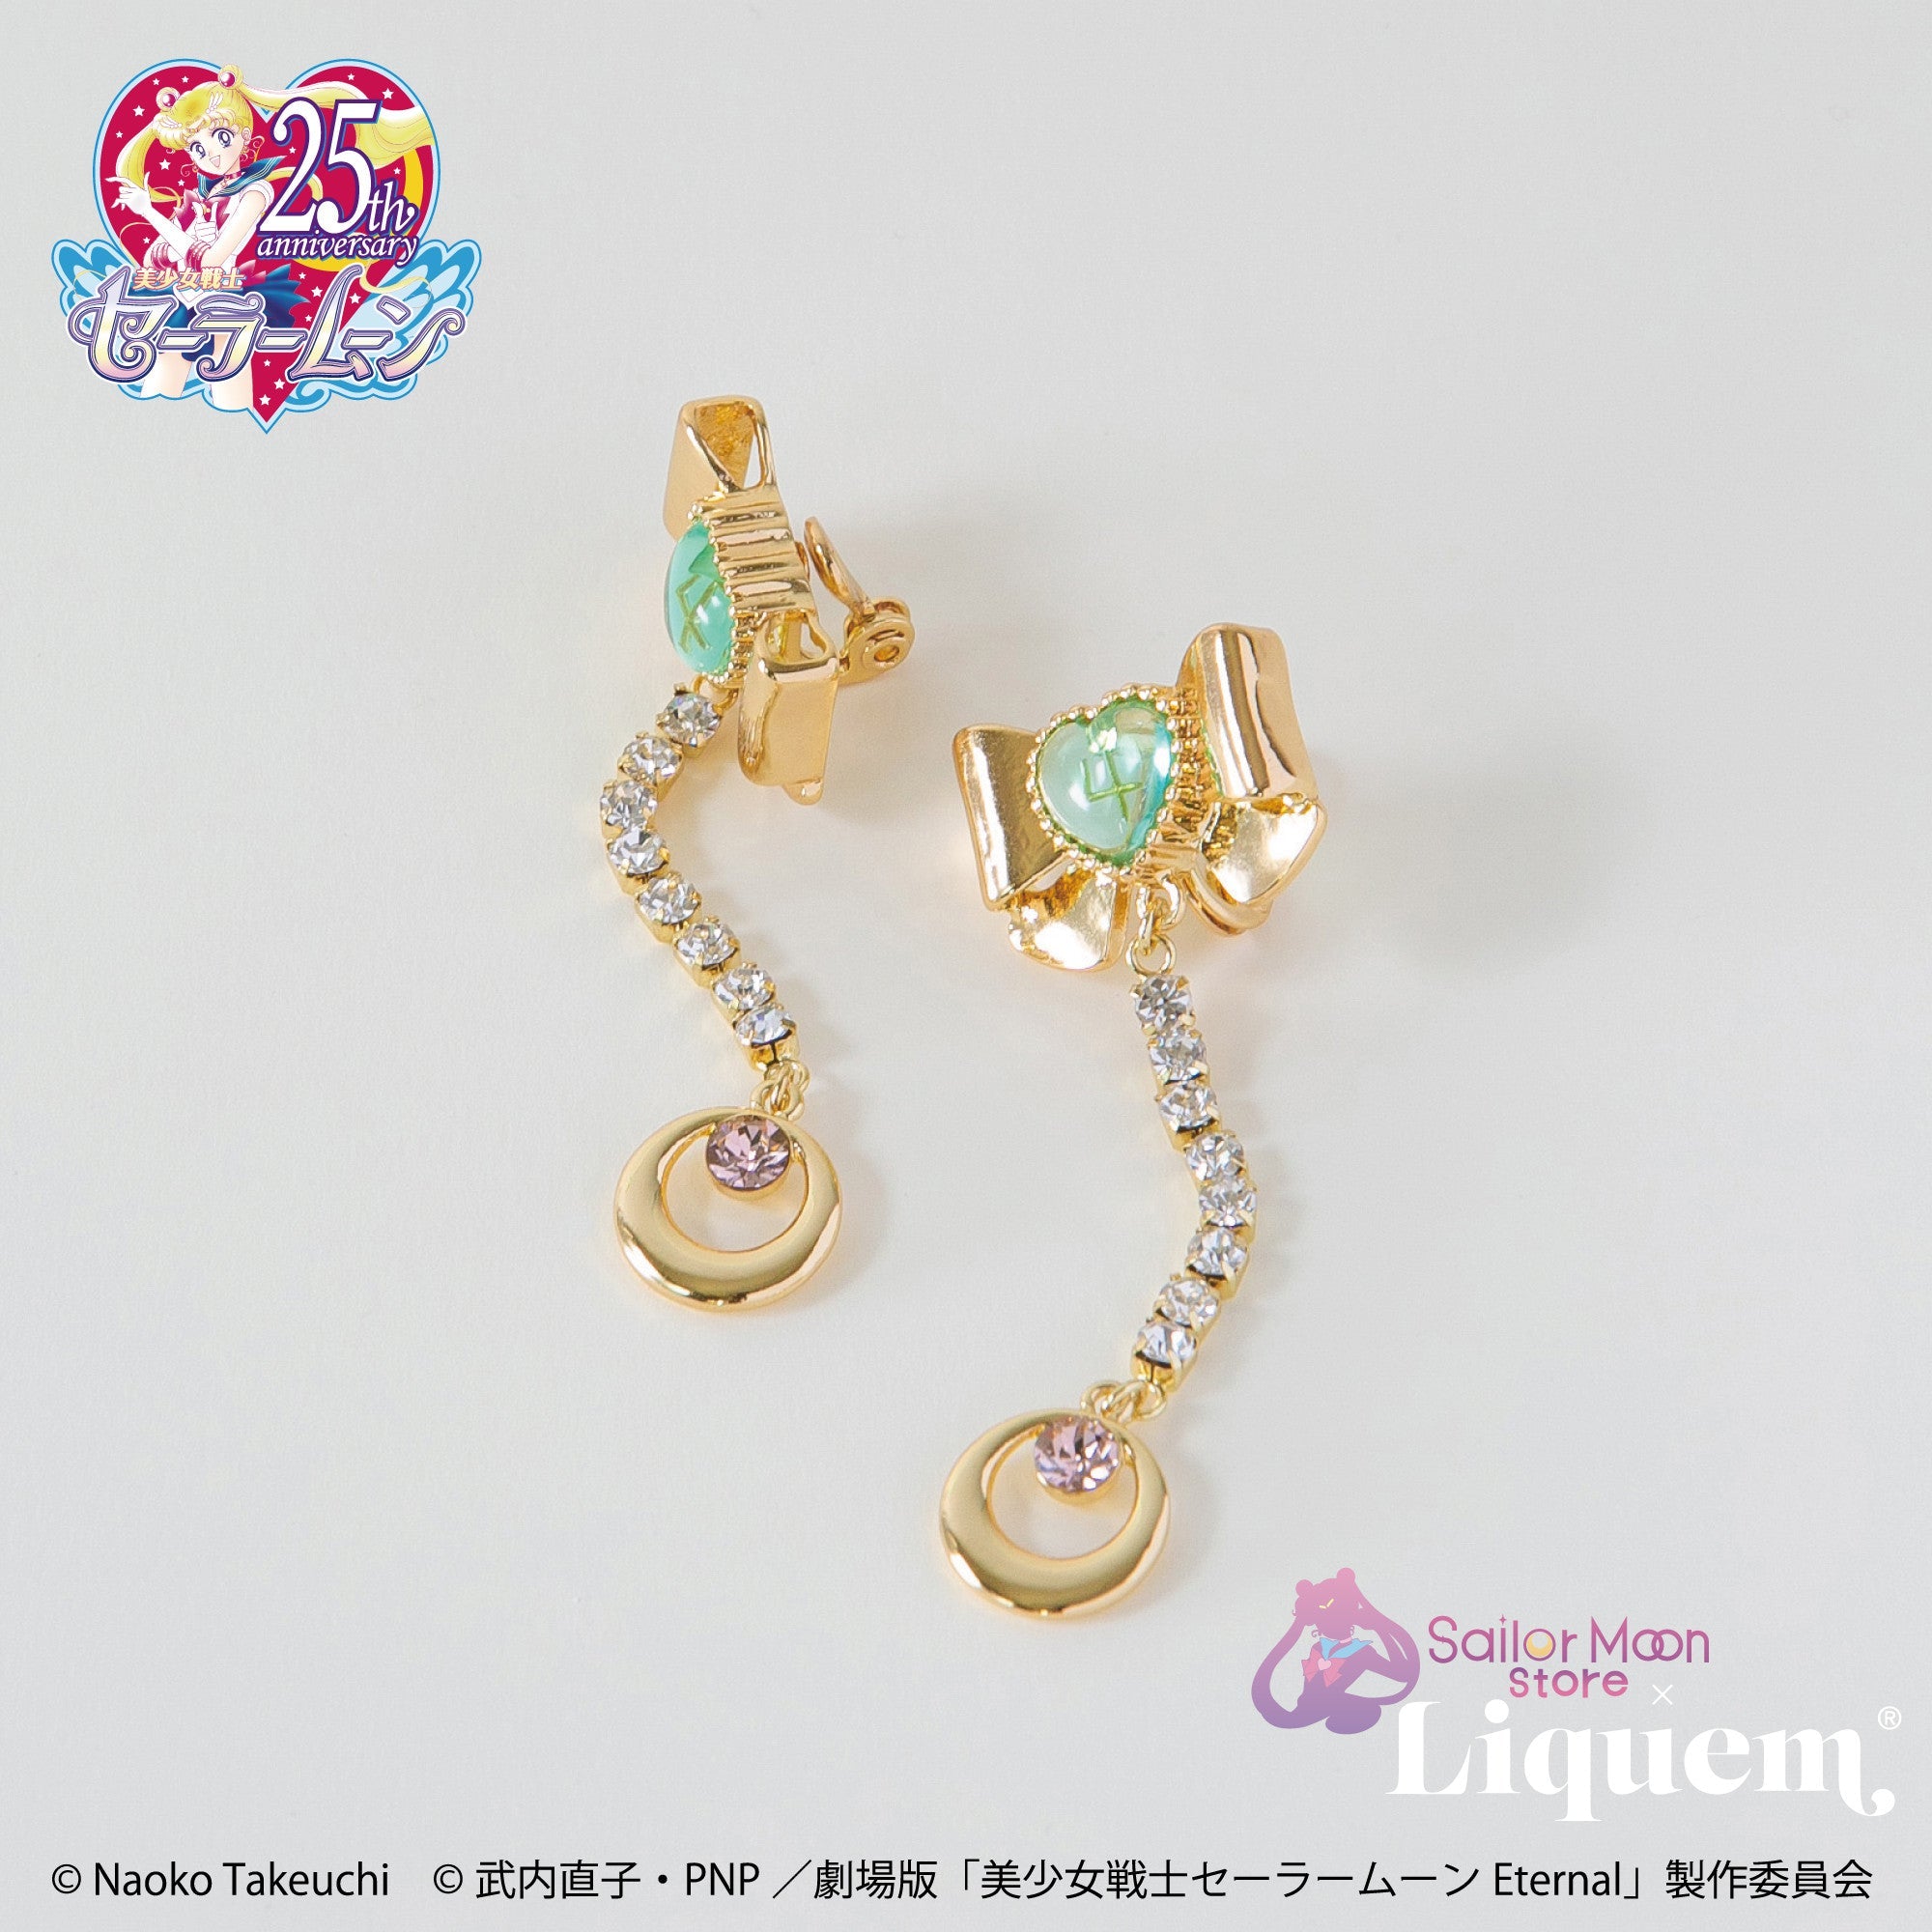 Sailor Moon store x Liquem / スーパーセーラージュピターリボン ...